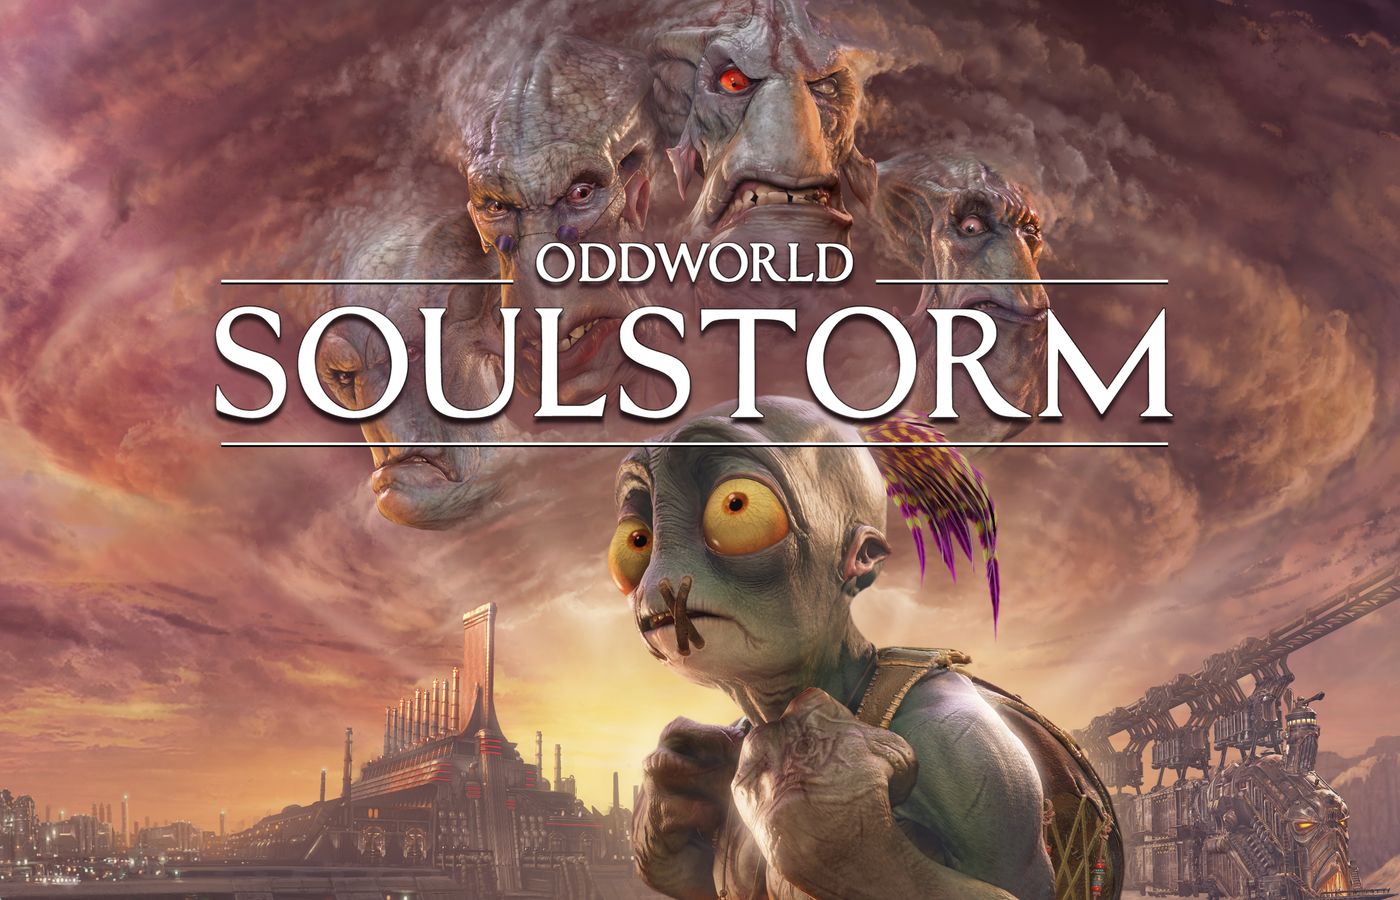 Exclusif à la PS5, Oddworld Soulstorm apparaît sur un listing Xbox One / Series